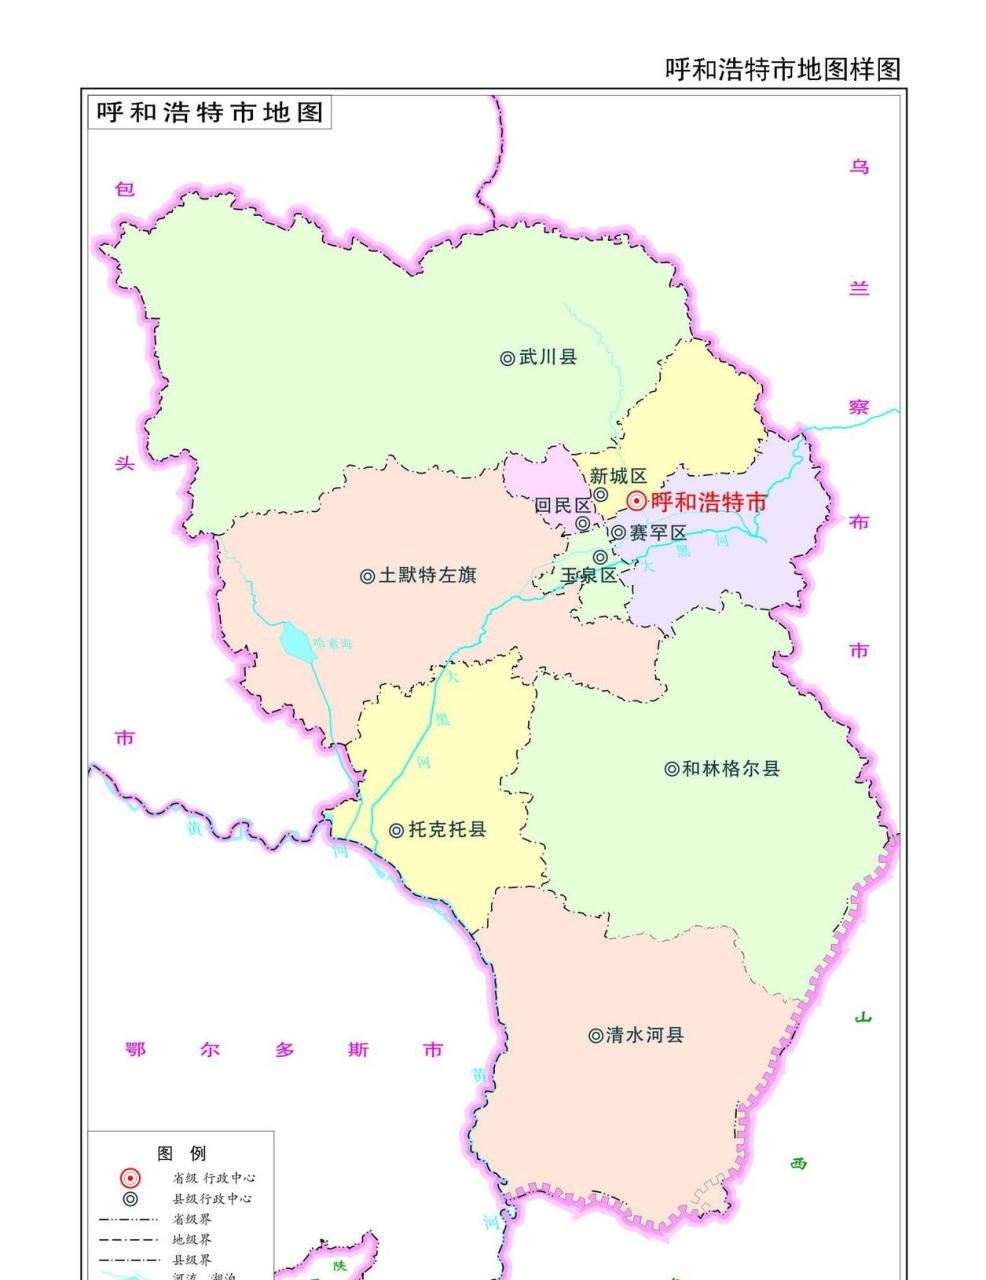 呼玛县城全景地图图片